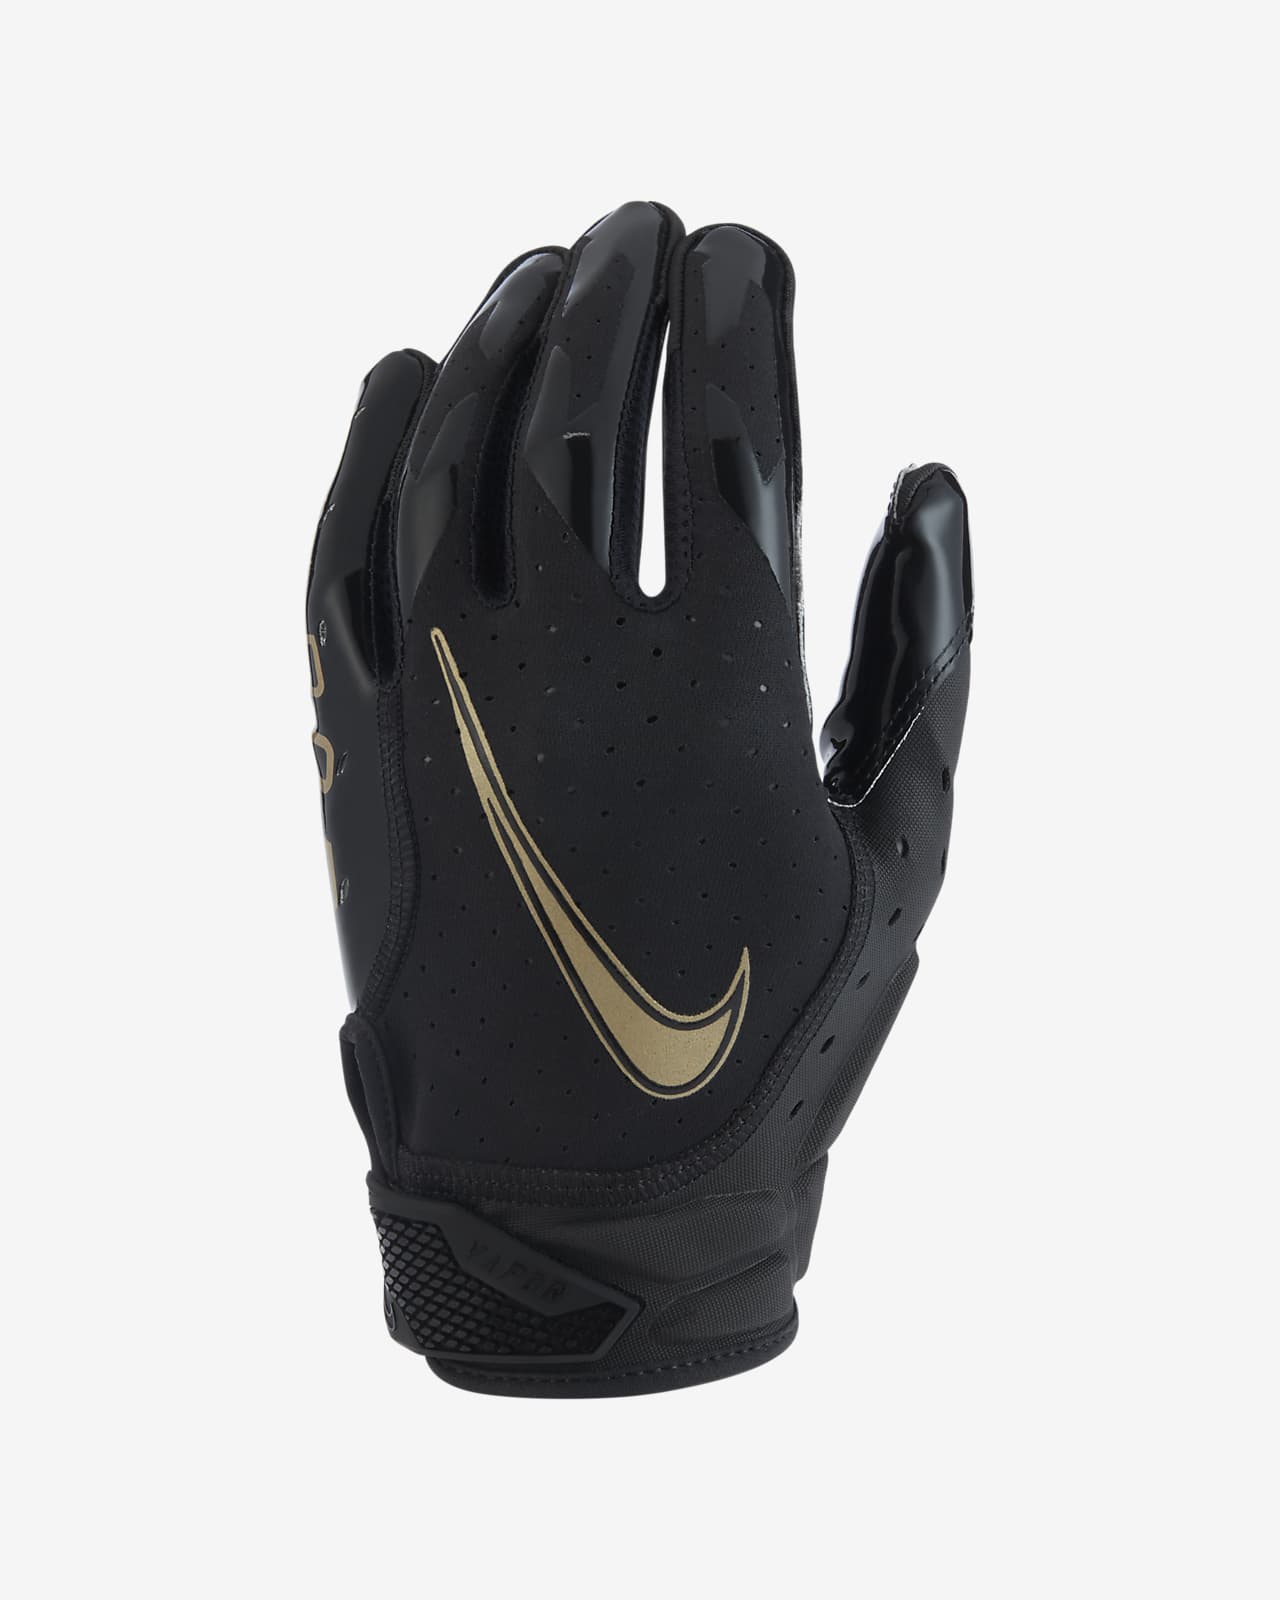 nike 6.0 gloves